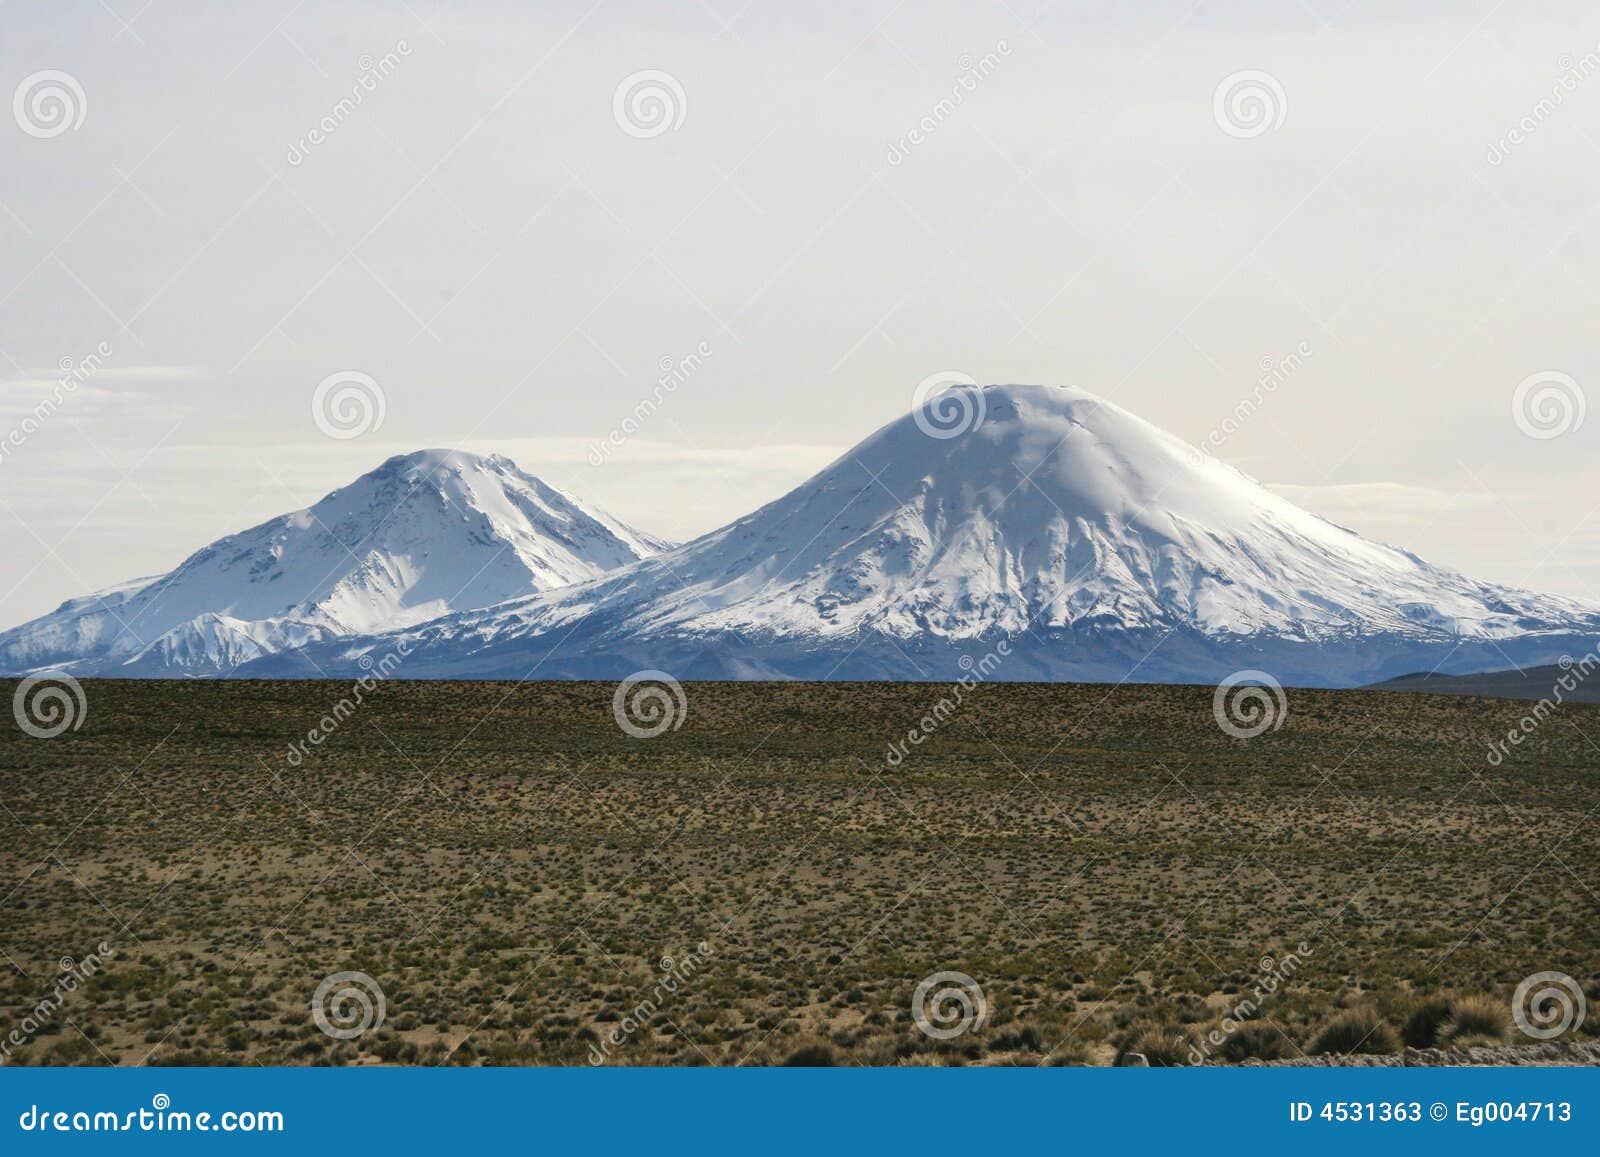 volcanoes of cotocotani